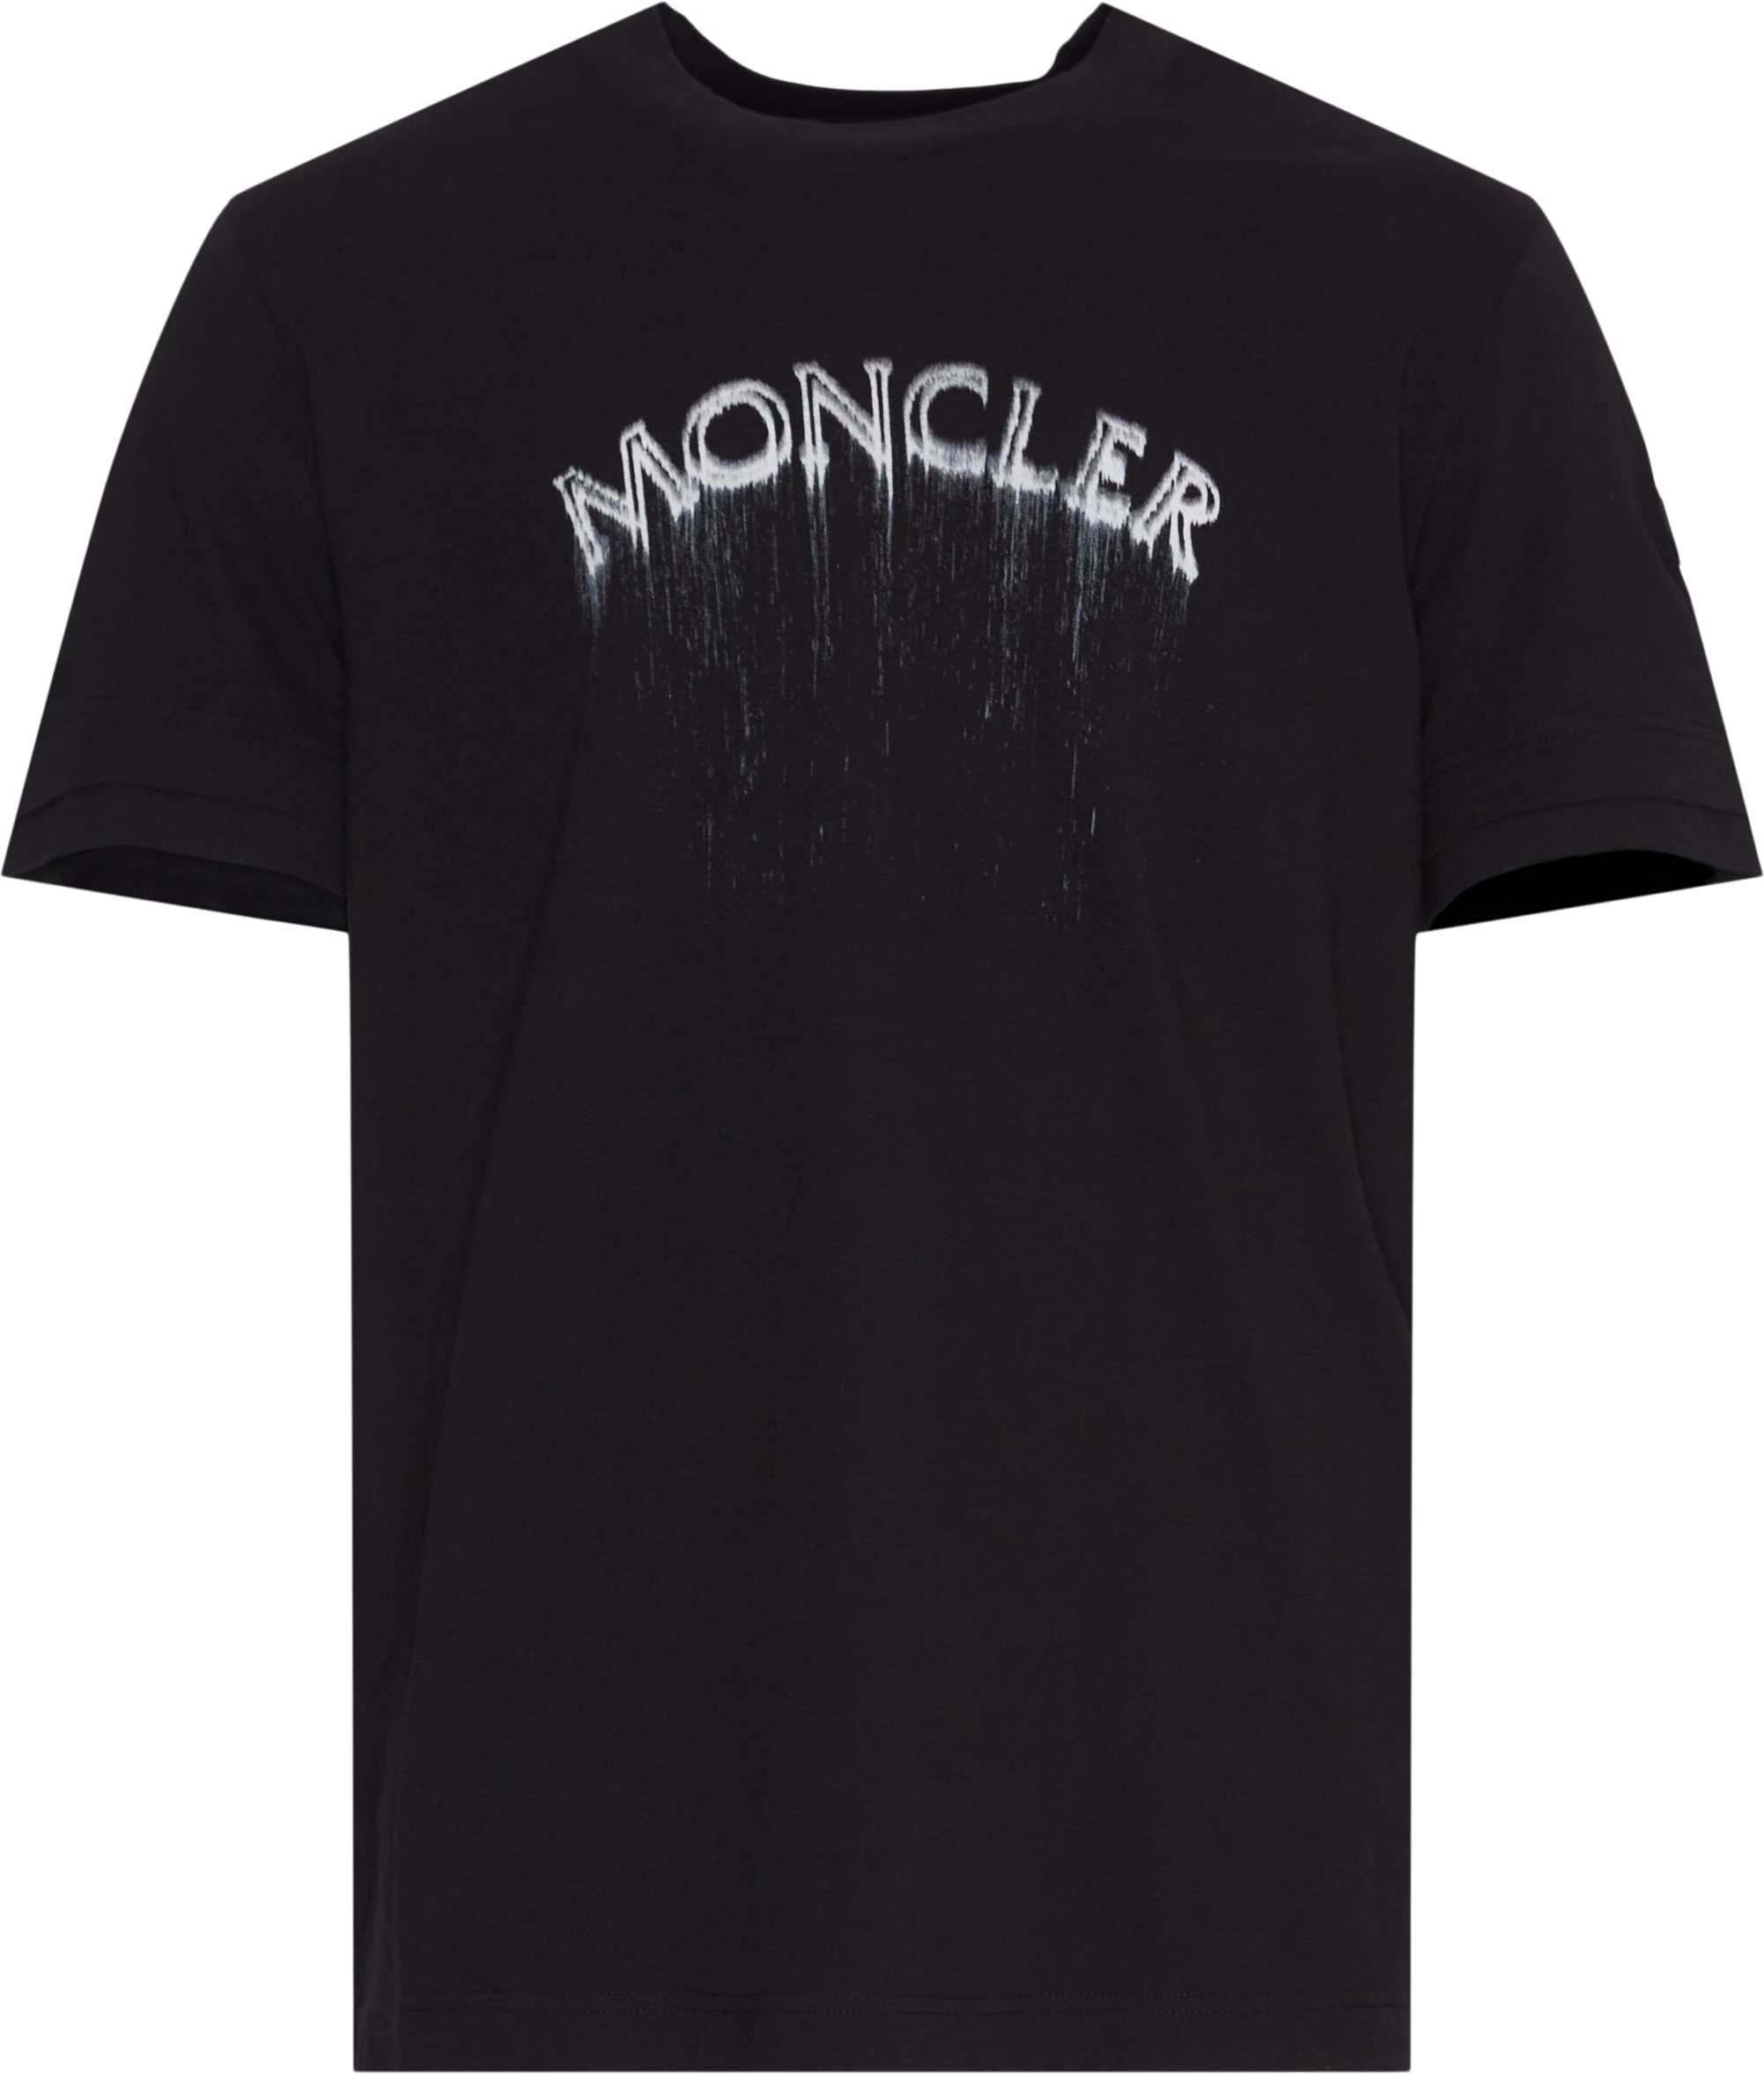 Moncler T-shirts 8C00002 89A17 2401 Sort